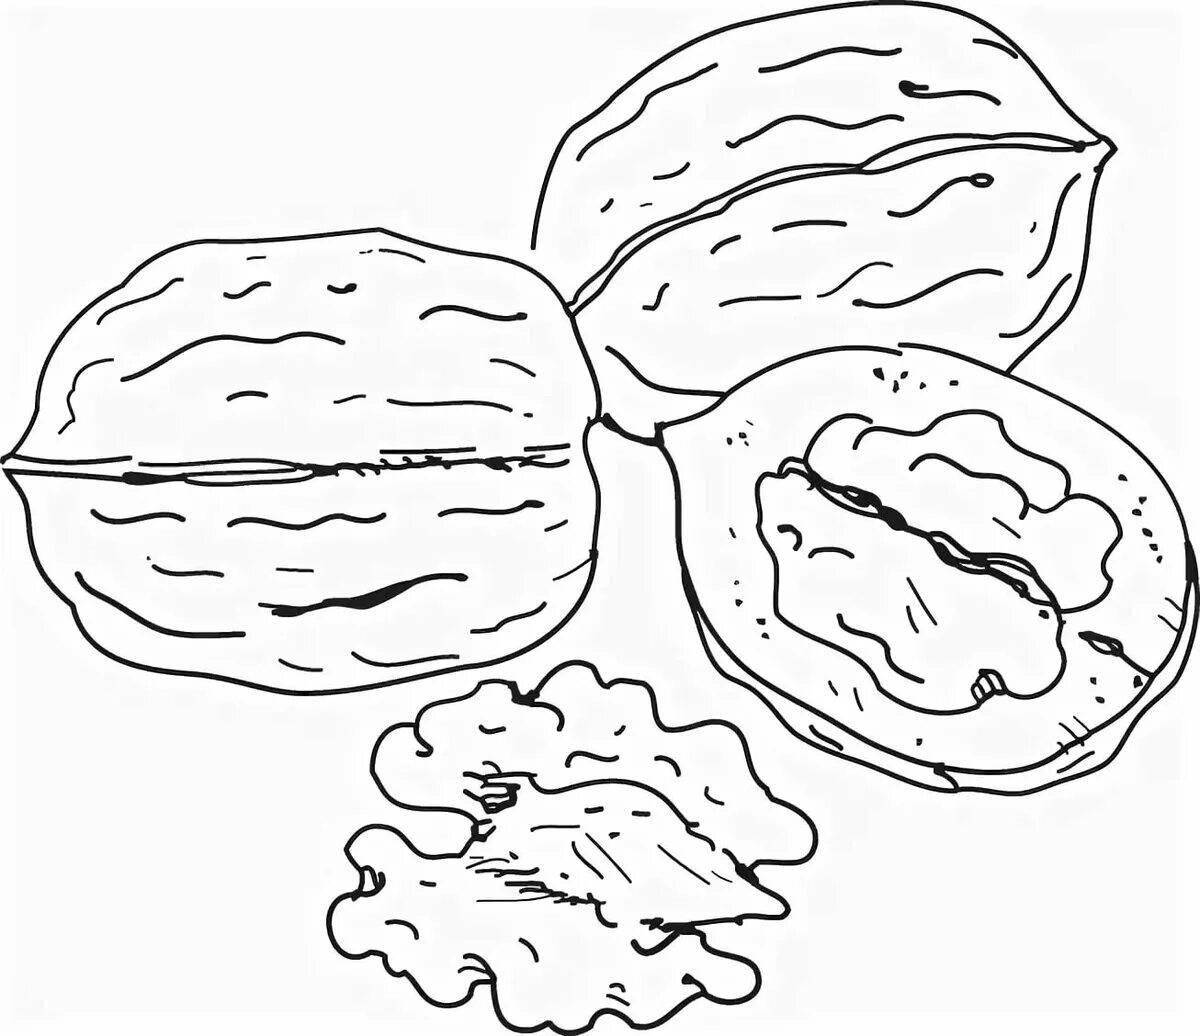 Яркая страница раскраски грецкого ореха